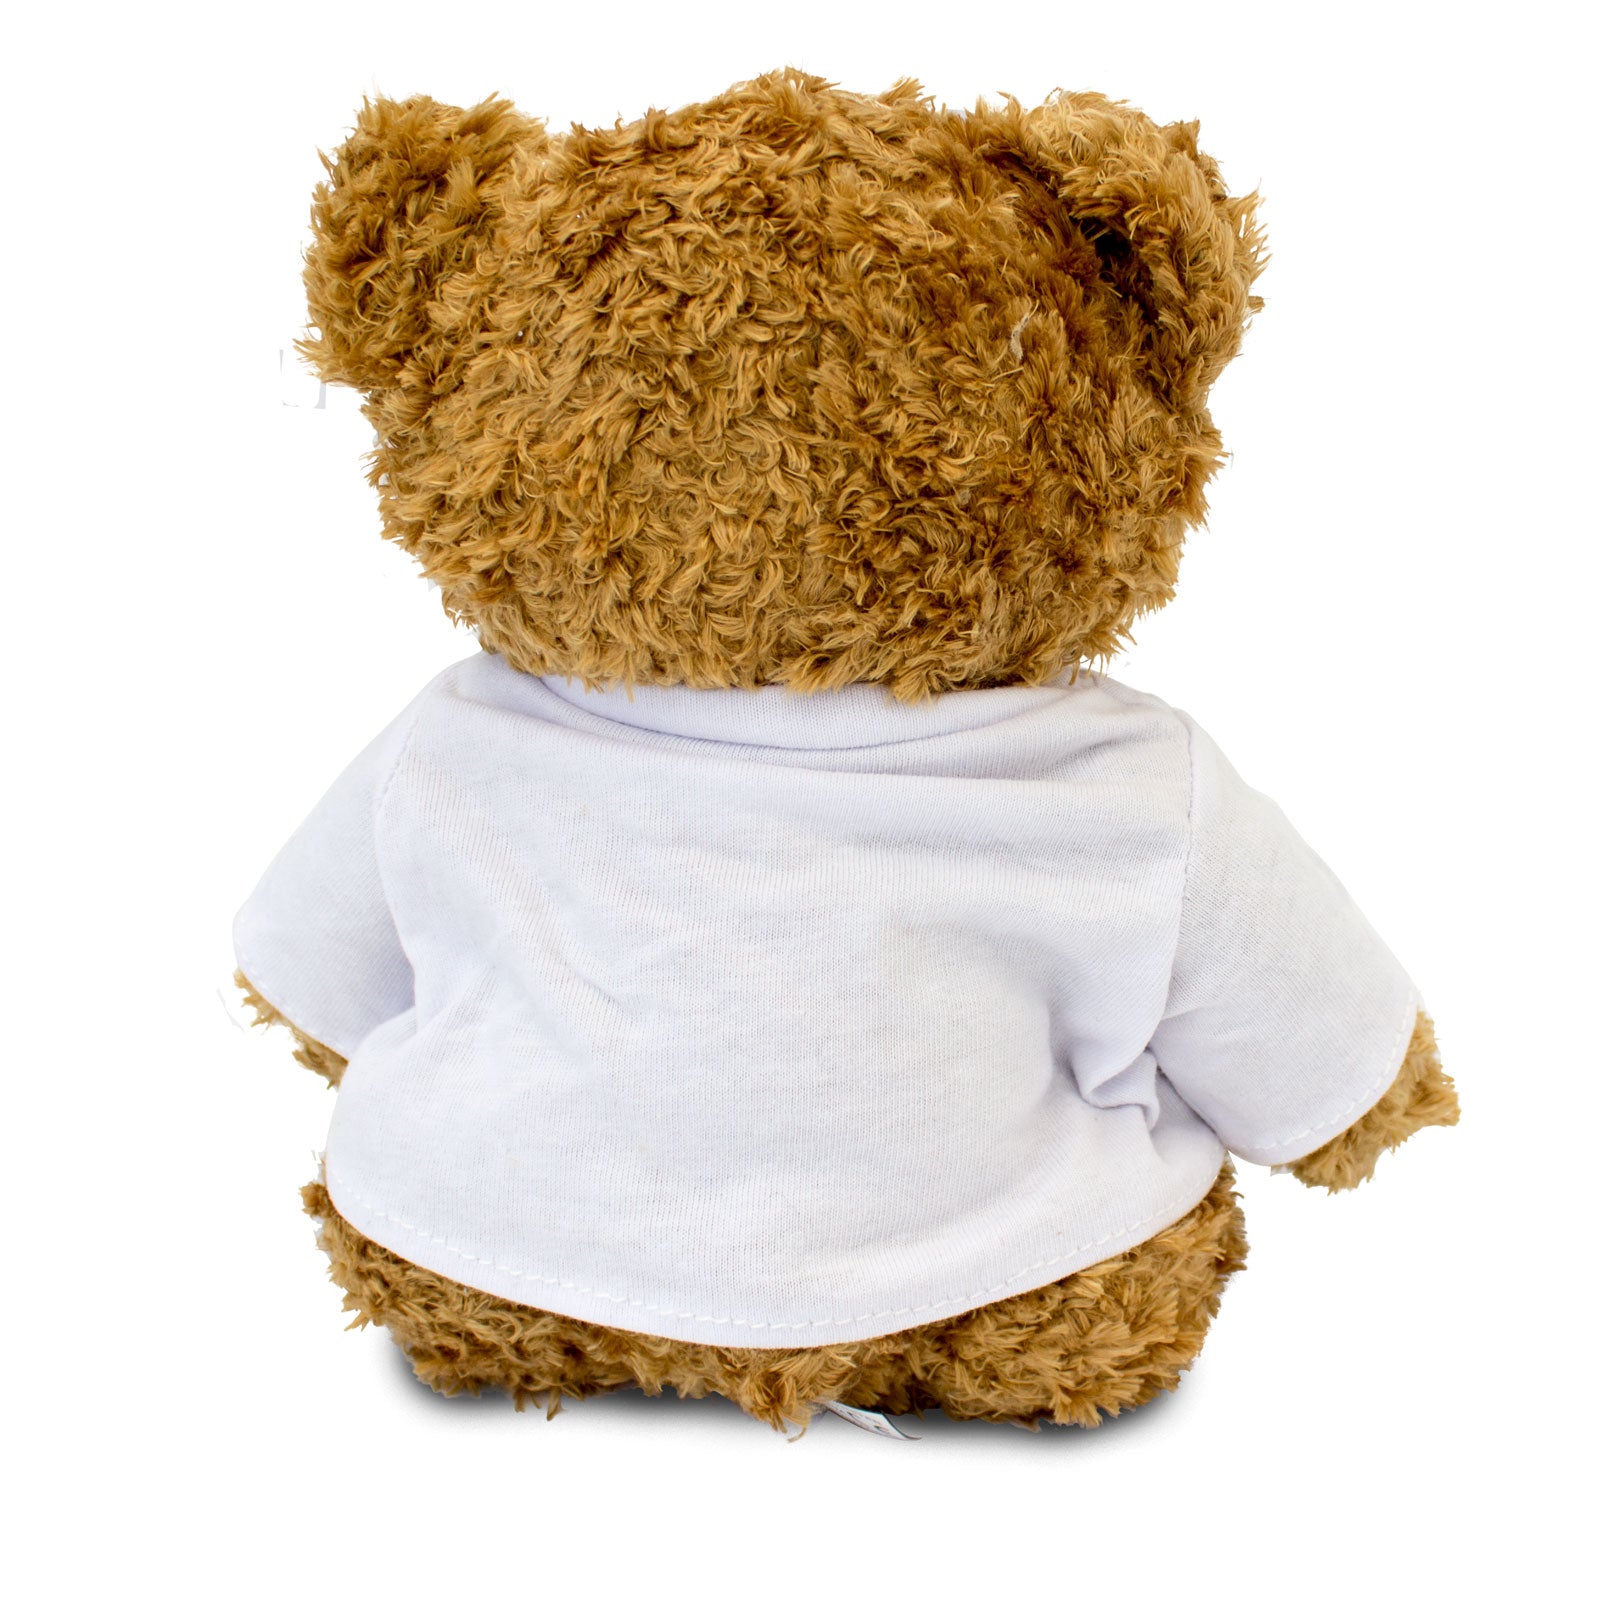 Get Well Soon Fabien - Teddy Bear